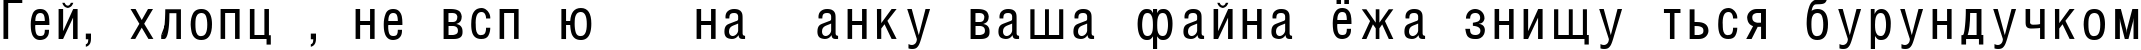 Пример написания шрифтом HelvCondenced текста на украинском